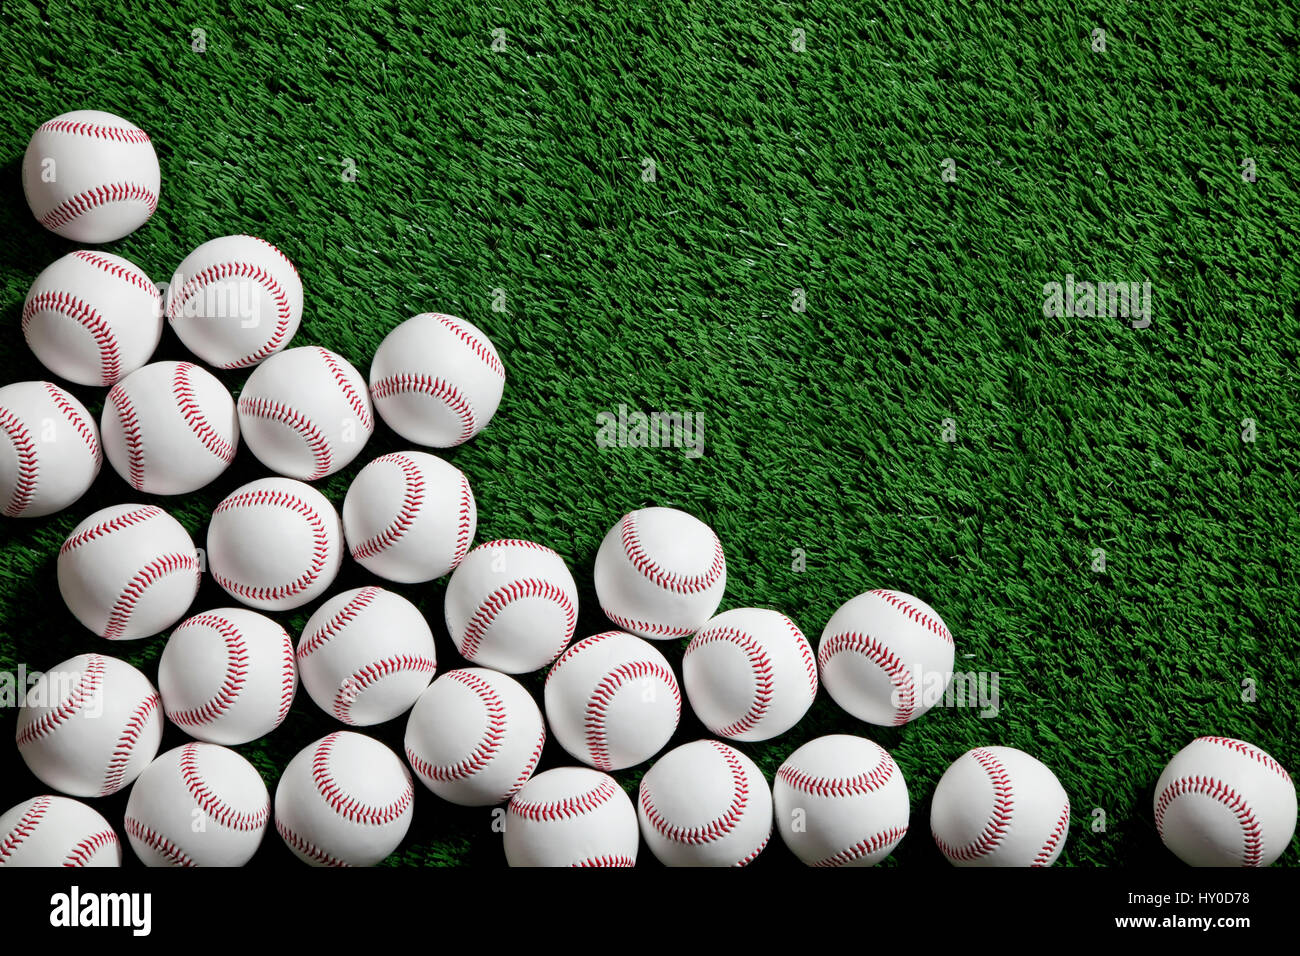 Von oben betrachtet mehrere Baseballs in der Ecke eines grünen Rasen-Hintergrund Stockfoto